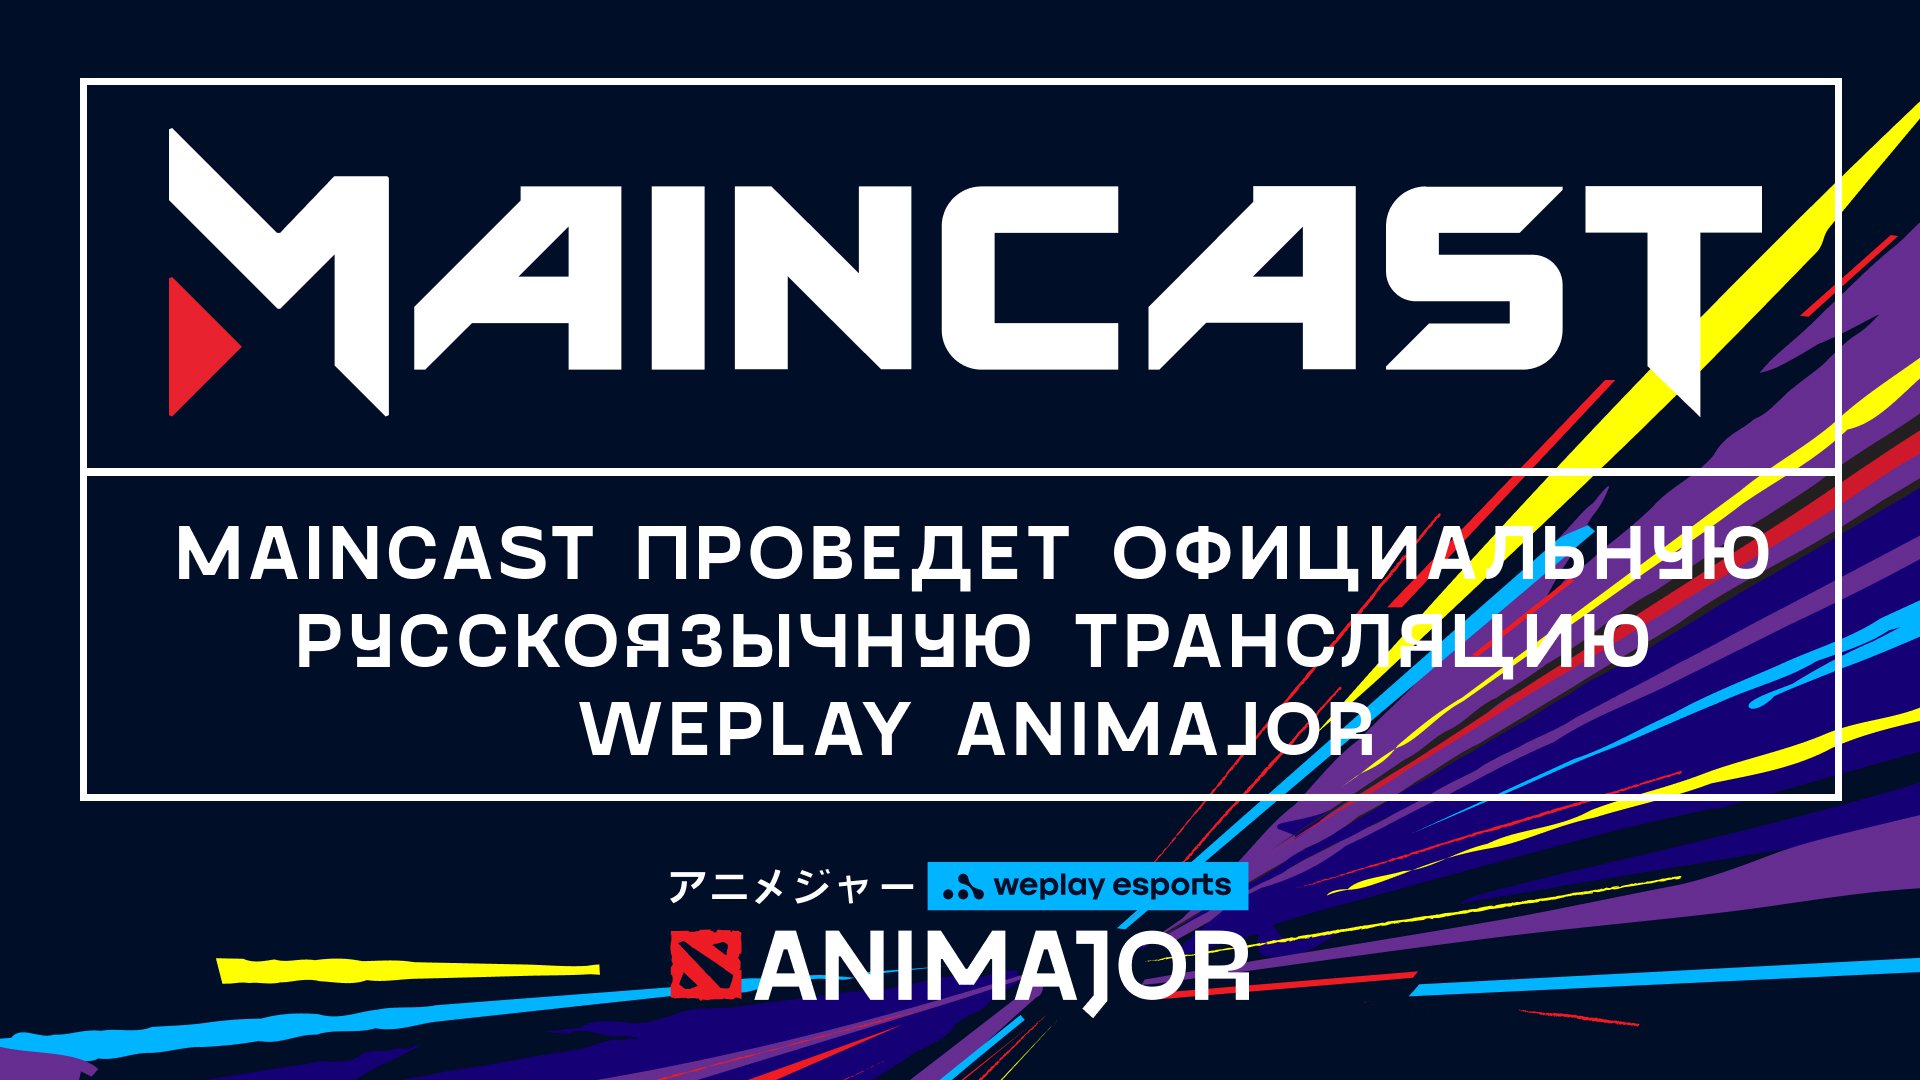 Maincast проведет официальную русскоязычную трансляцию WePlay AniMajor